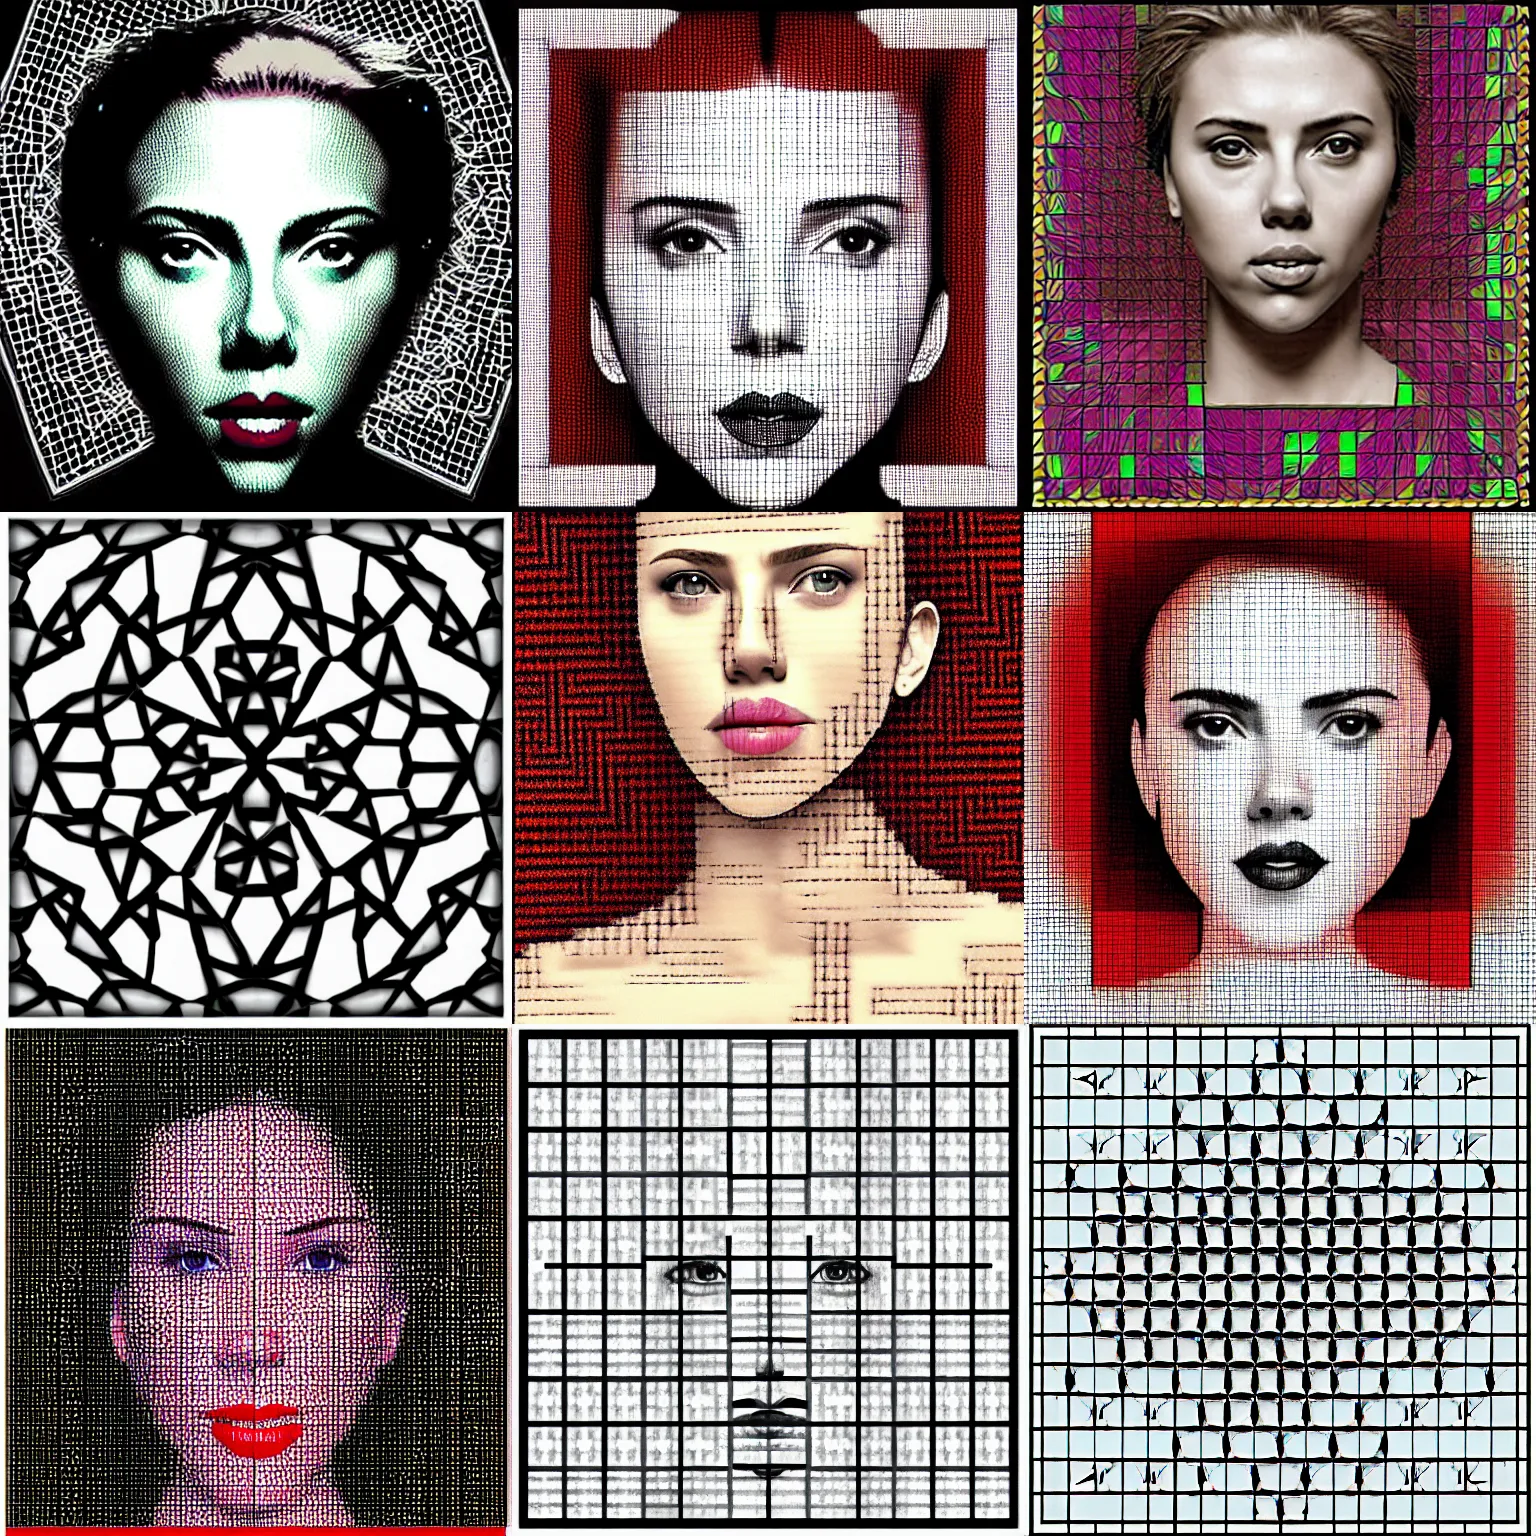 ArtStation - Pixel art 32x32 - Self portrait